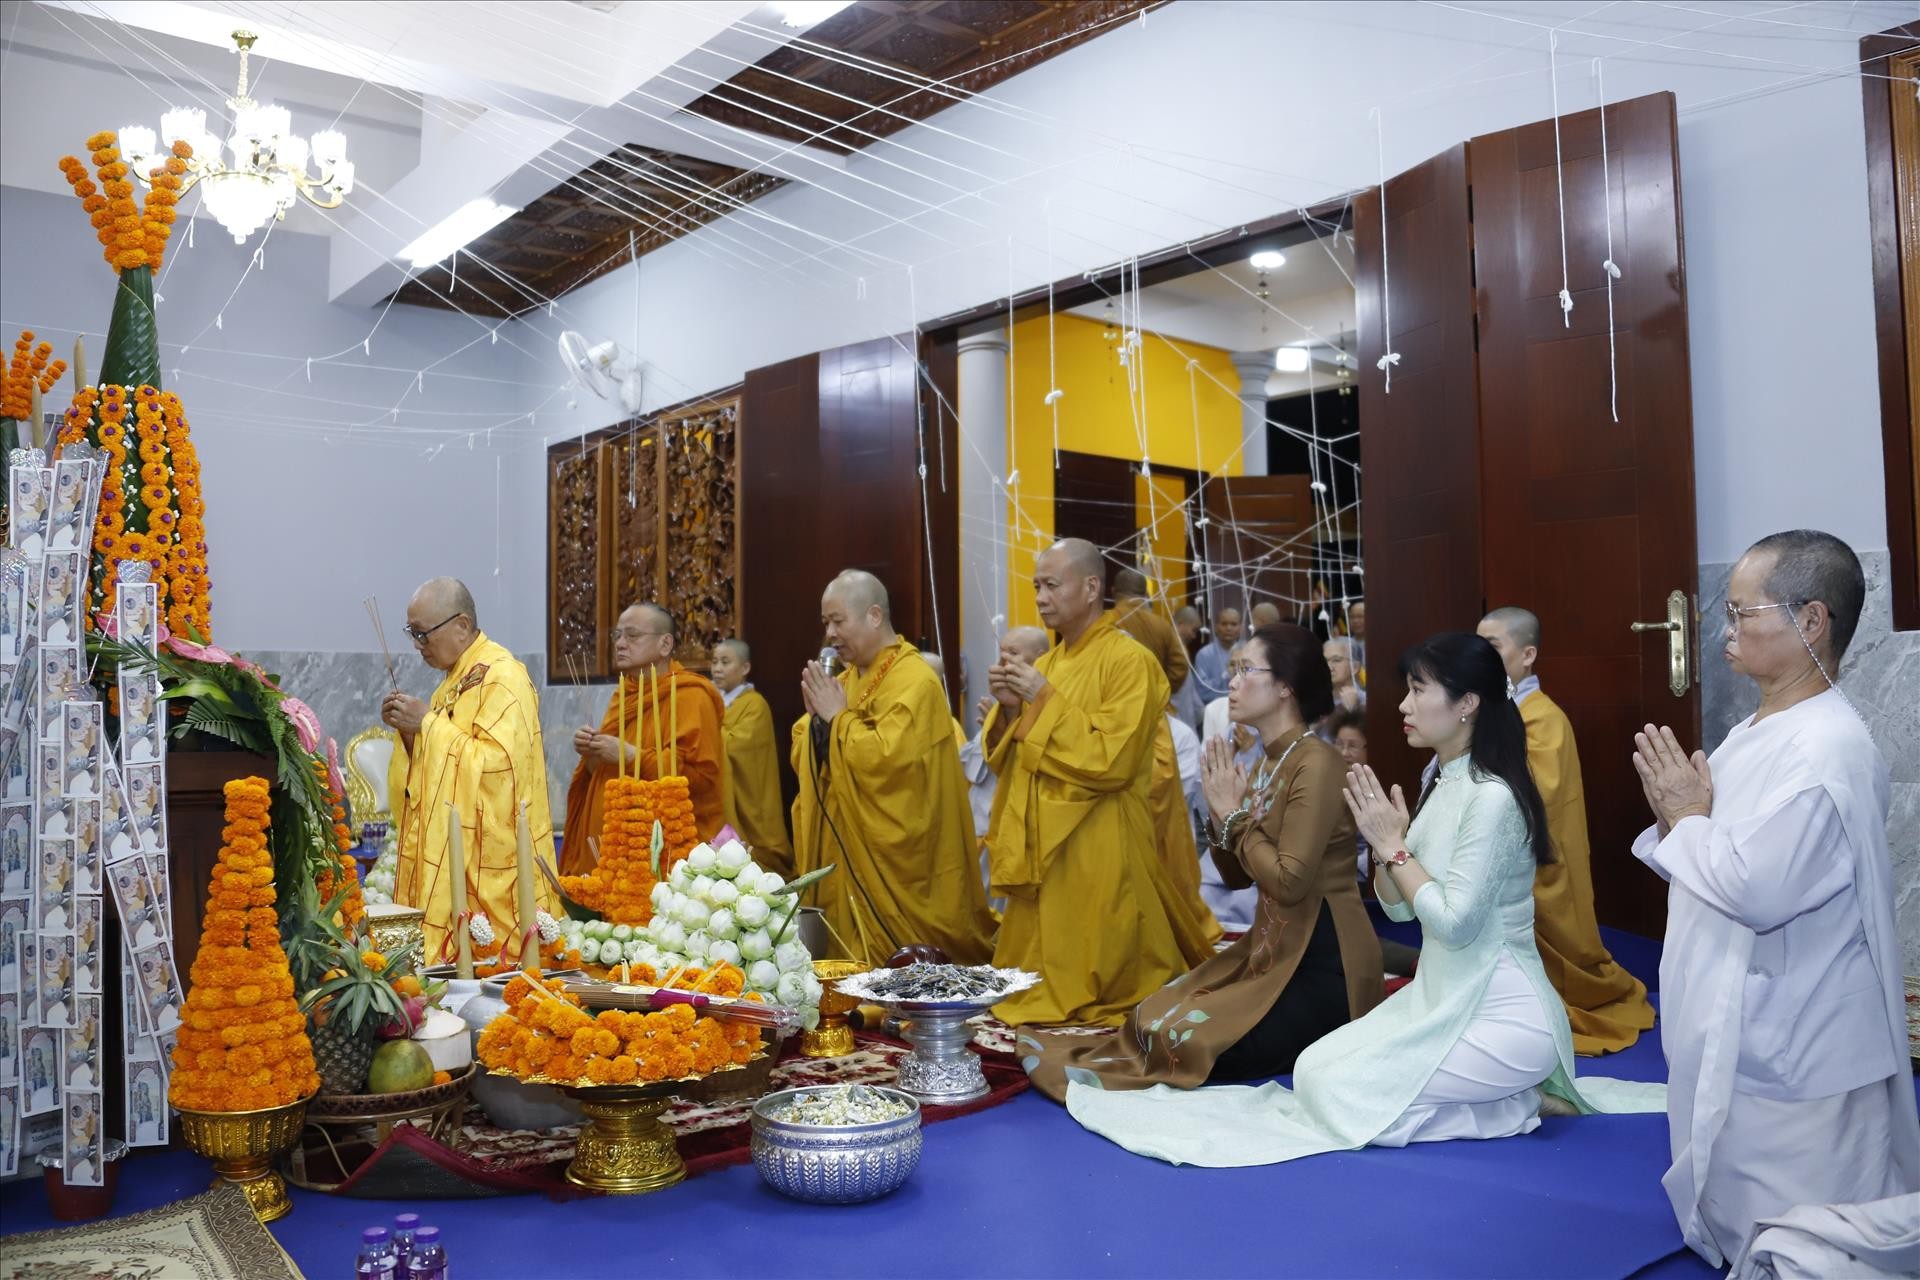 Trong gần 100 năm qua, chùa Diệu Giác là nơi sinh hoạt tôn giáo không chỉ của bà con Phật tử người Việt Nam mà còn của các Phật tử người Lào. Sau gần 2 năm xây dựng, ngôi chùa này đã hoàn thành việc trùng tu, nâng cấp đủ điều kiện thuận duyên để tổ chức tu học Phật pháp, làm trung tâm sinh hoạt cộng đồng, trao đổi văn hoá và tìm hiểu giáo lý Phật đà cho cộng đồng phật tử hai nước Việt Nam-Lào. (Ảnh: TTXVN)